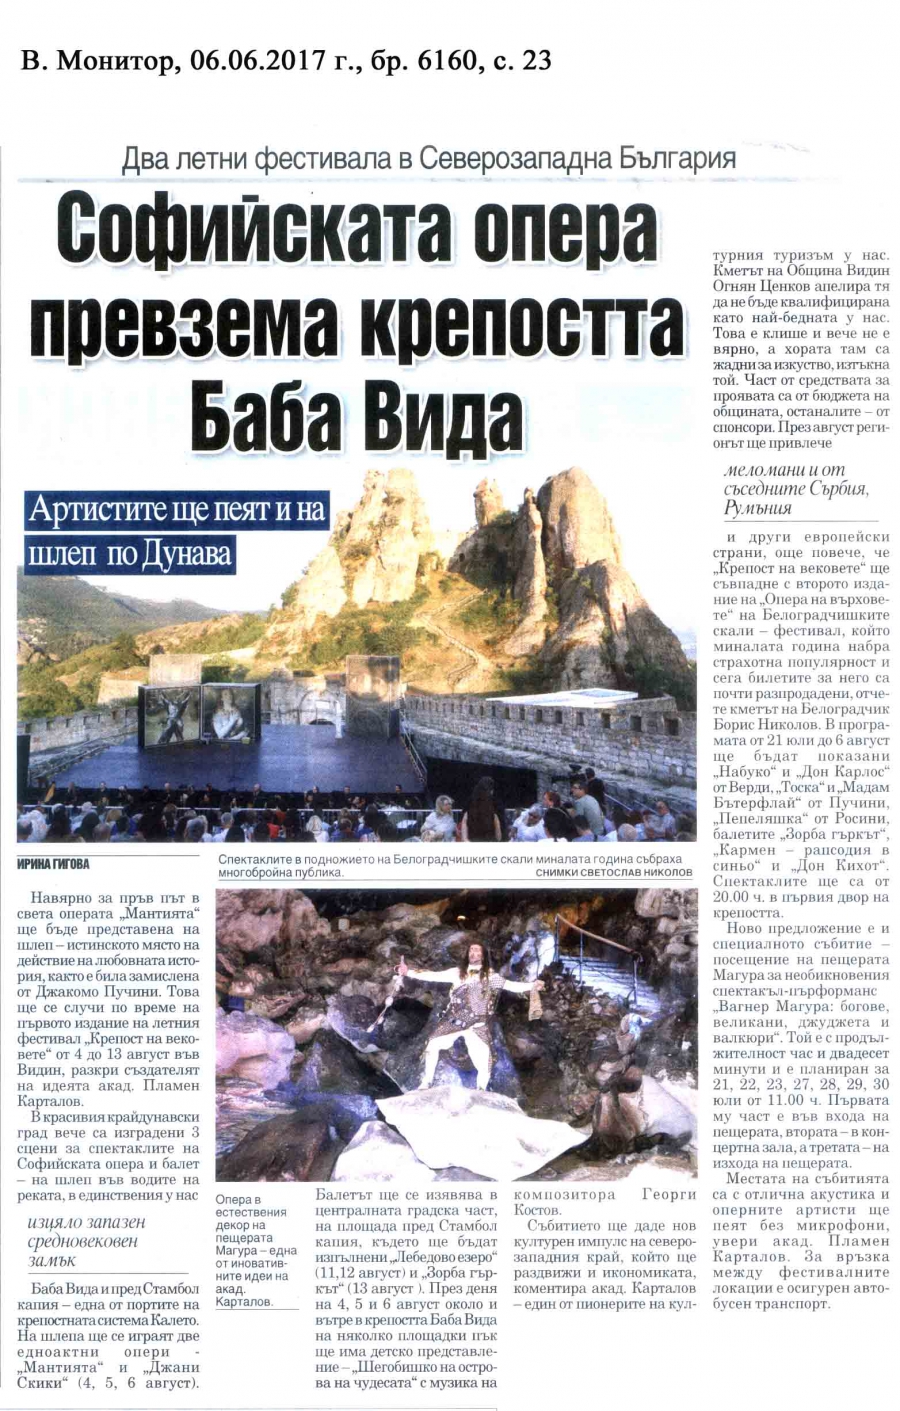 в. Монитор - Софийската опера превзема крепостта "Баба Вида"